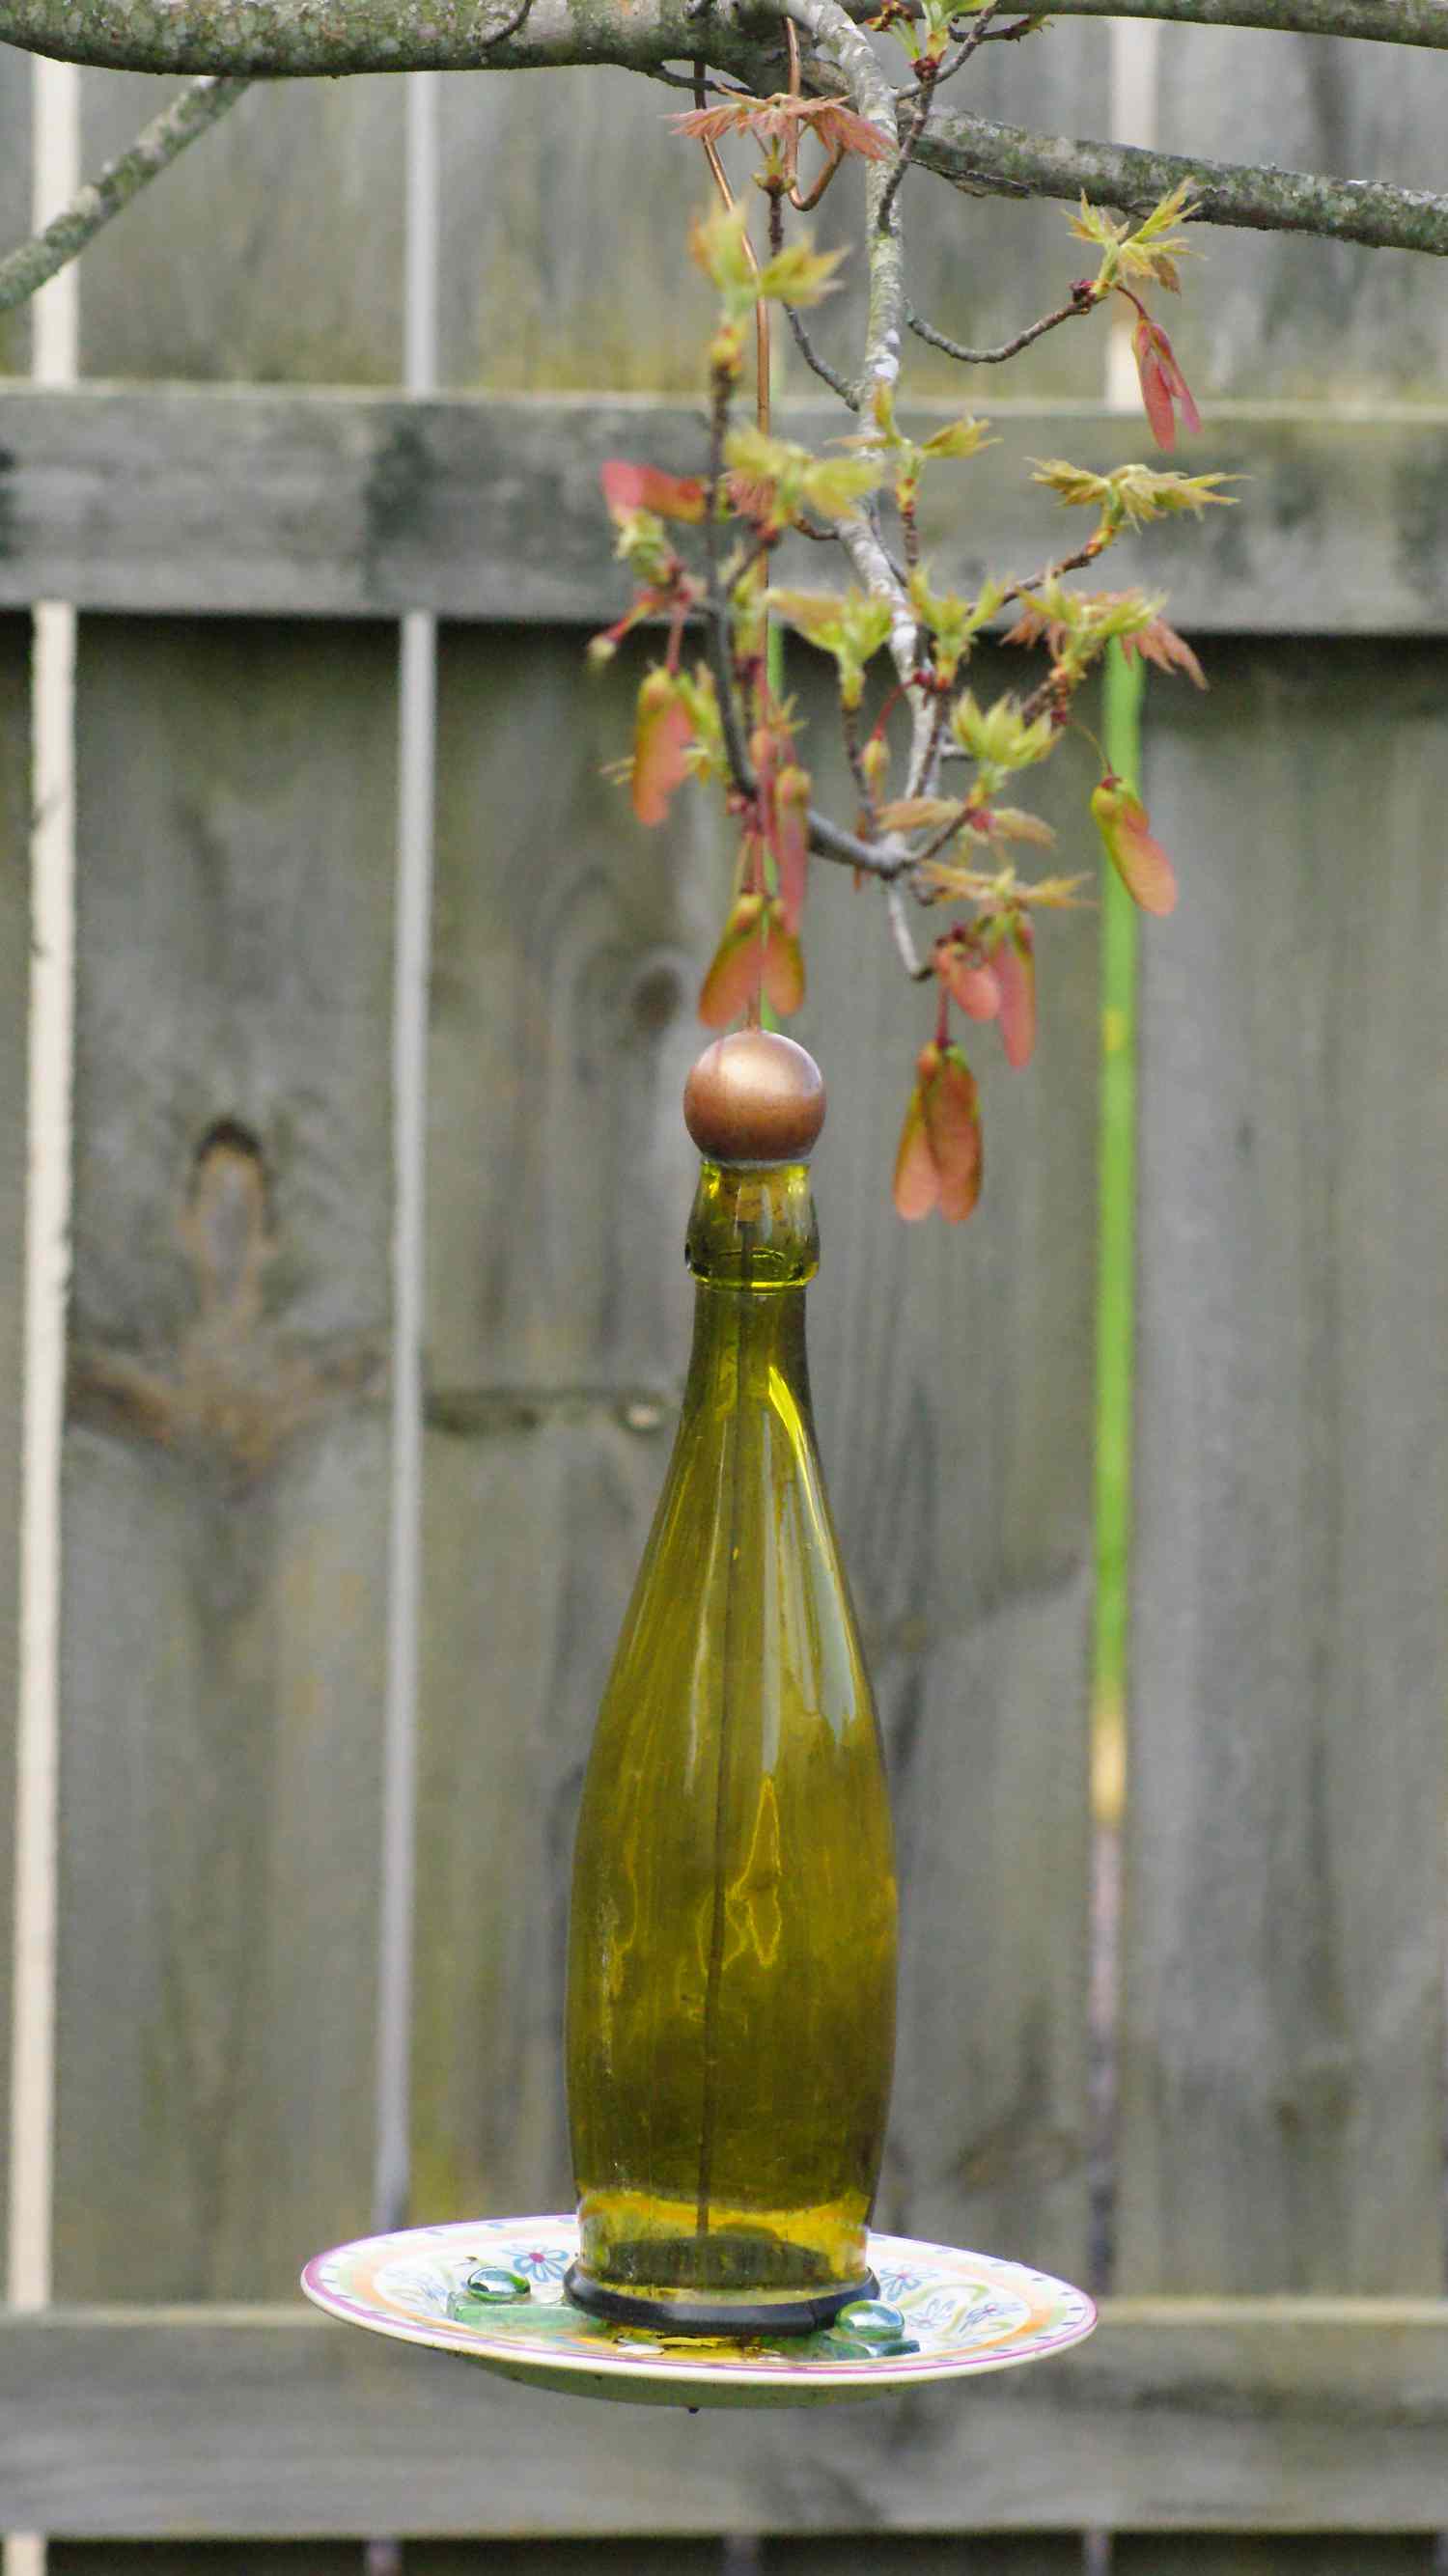 Vogelfutterautomat aus einer Weinflasche